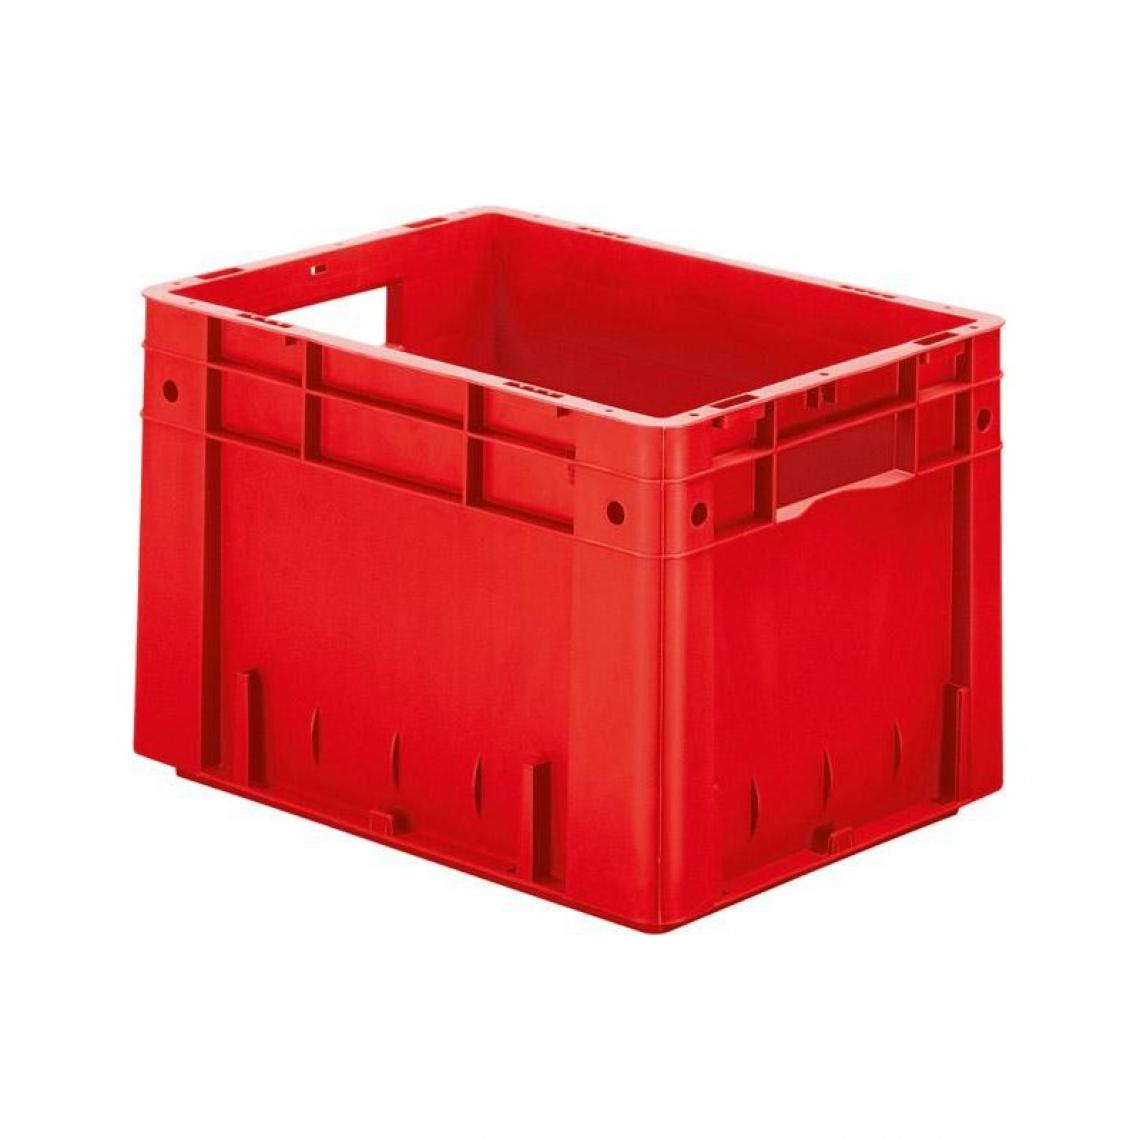 marque generique - Caisse de transport VTK 400/270-0 rouge - Coffres